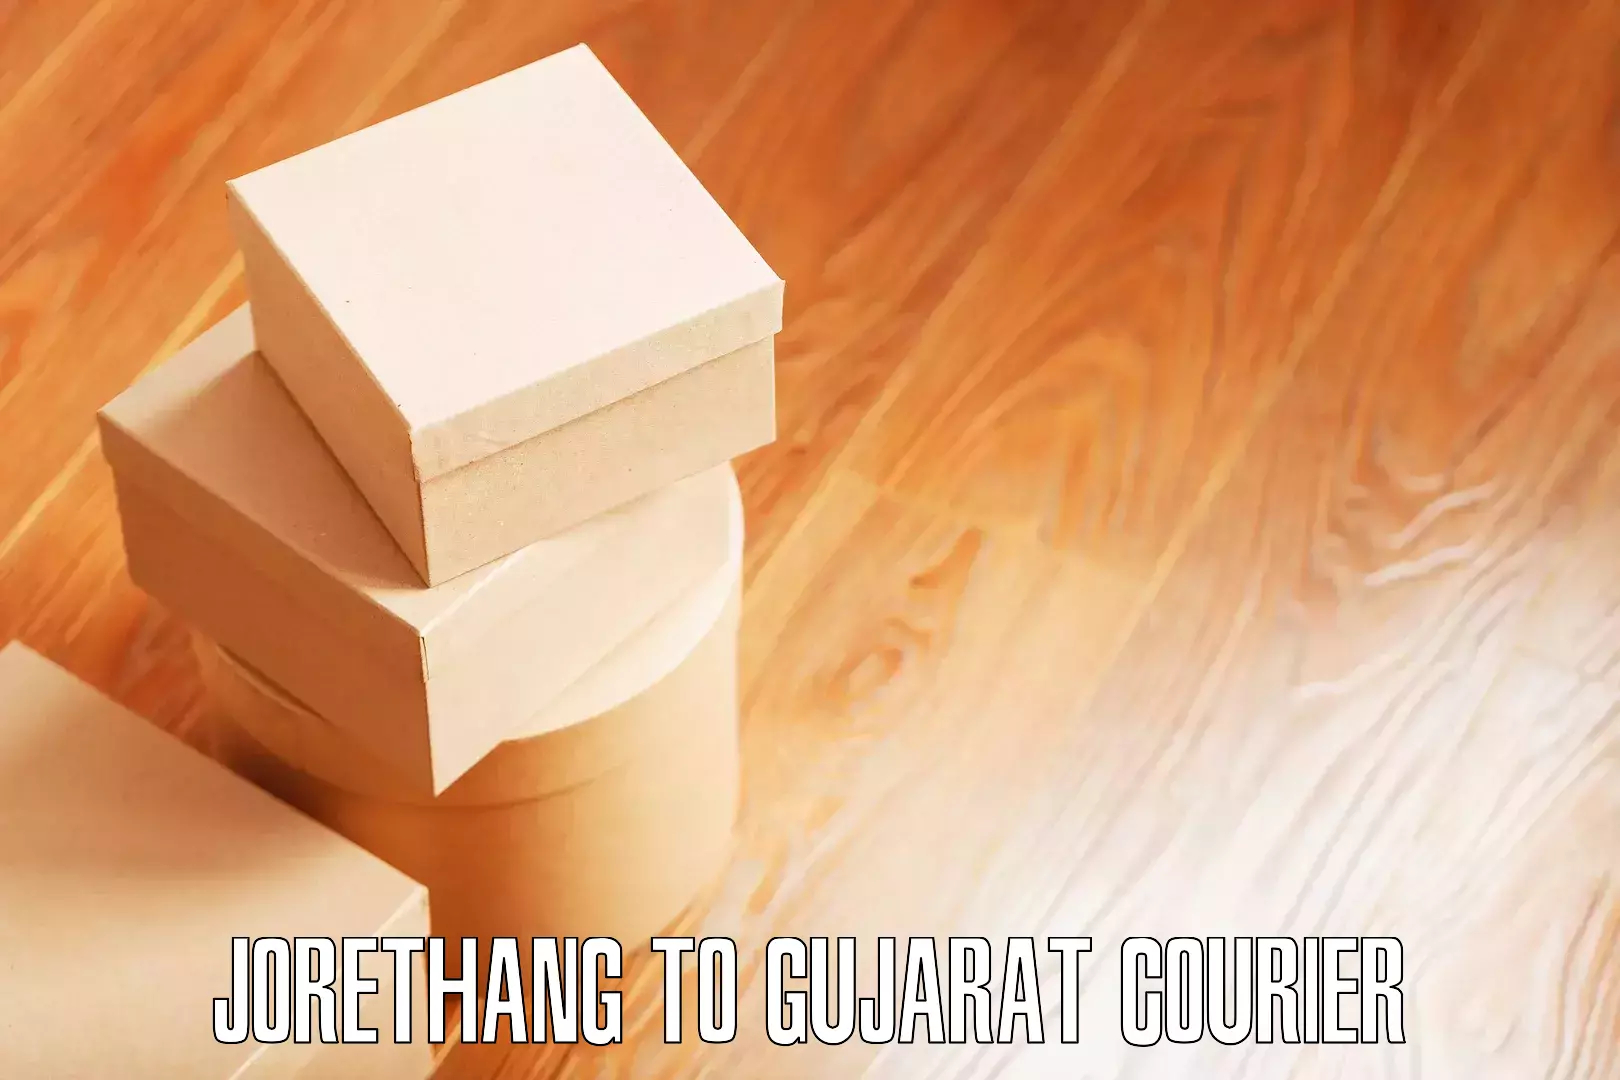 Safe home goods transport Jorethang to Gujarat